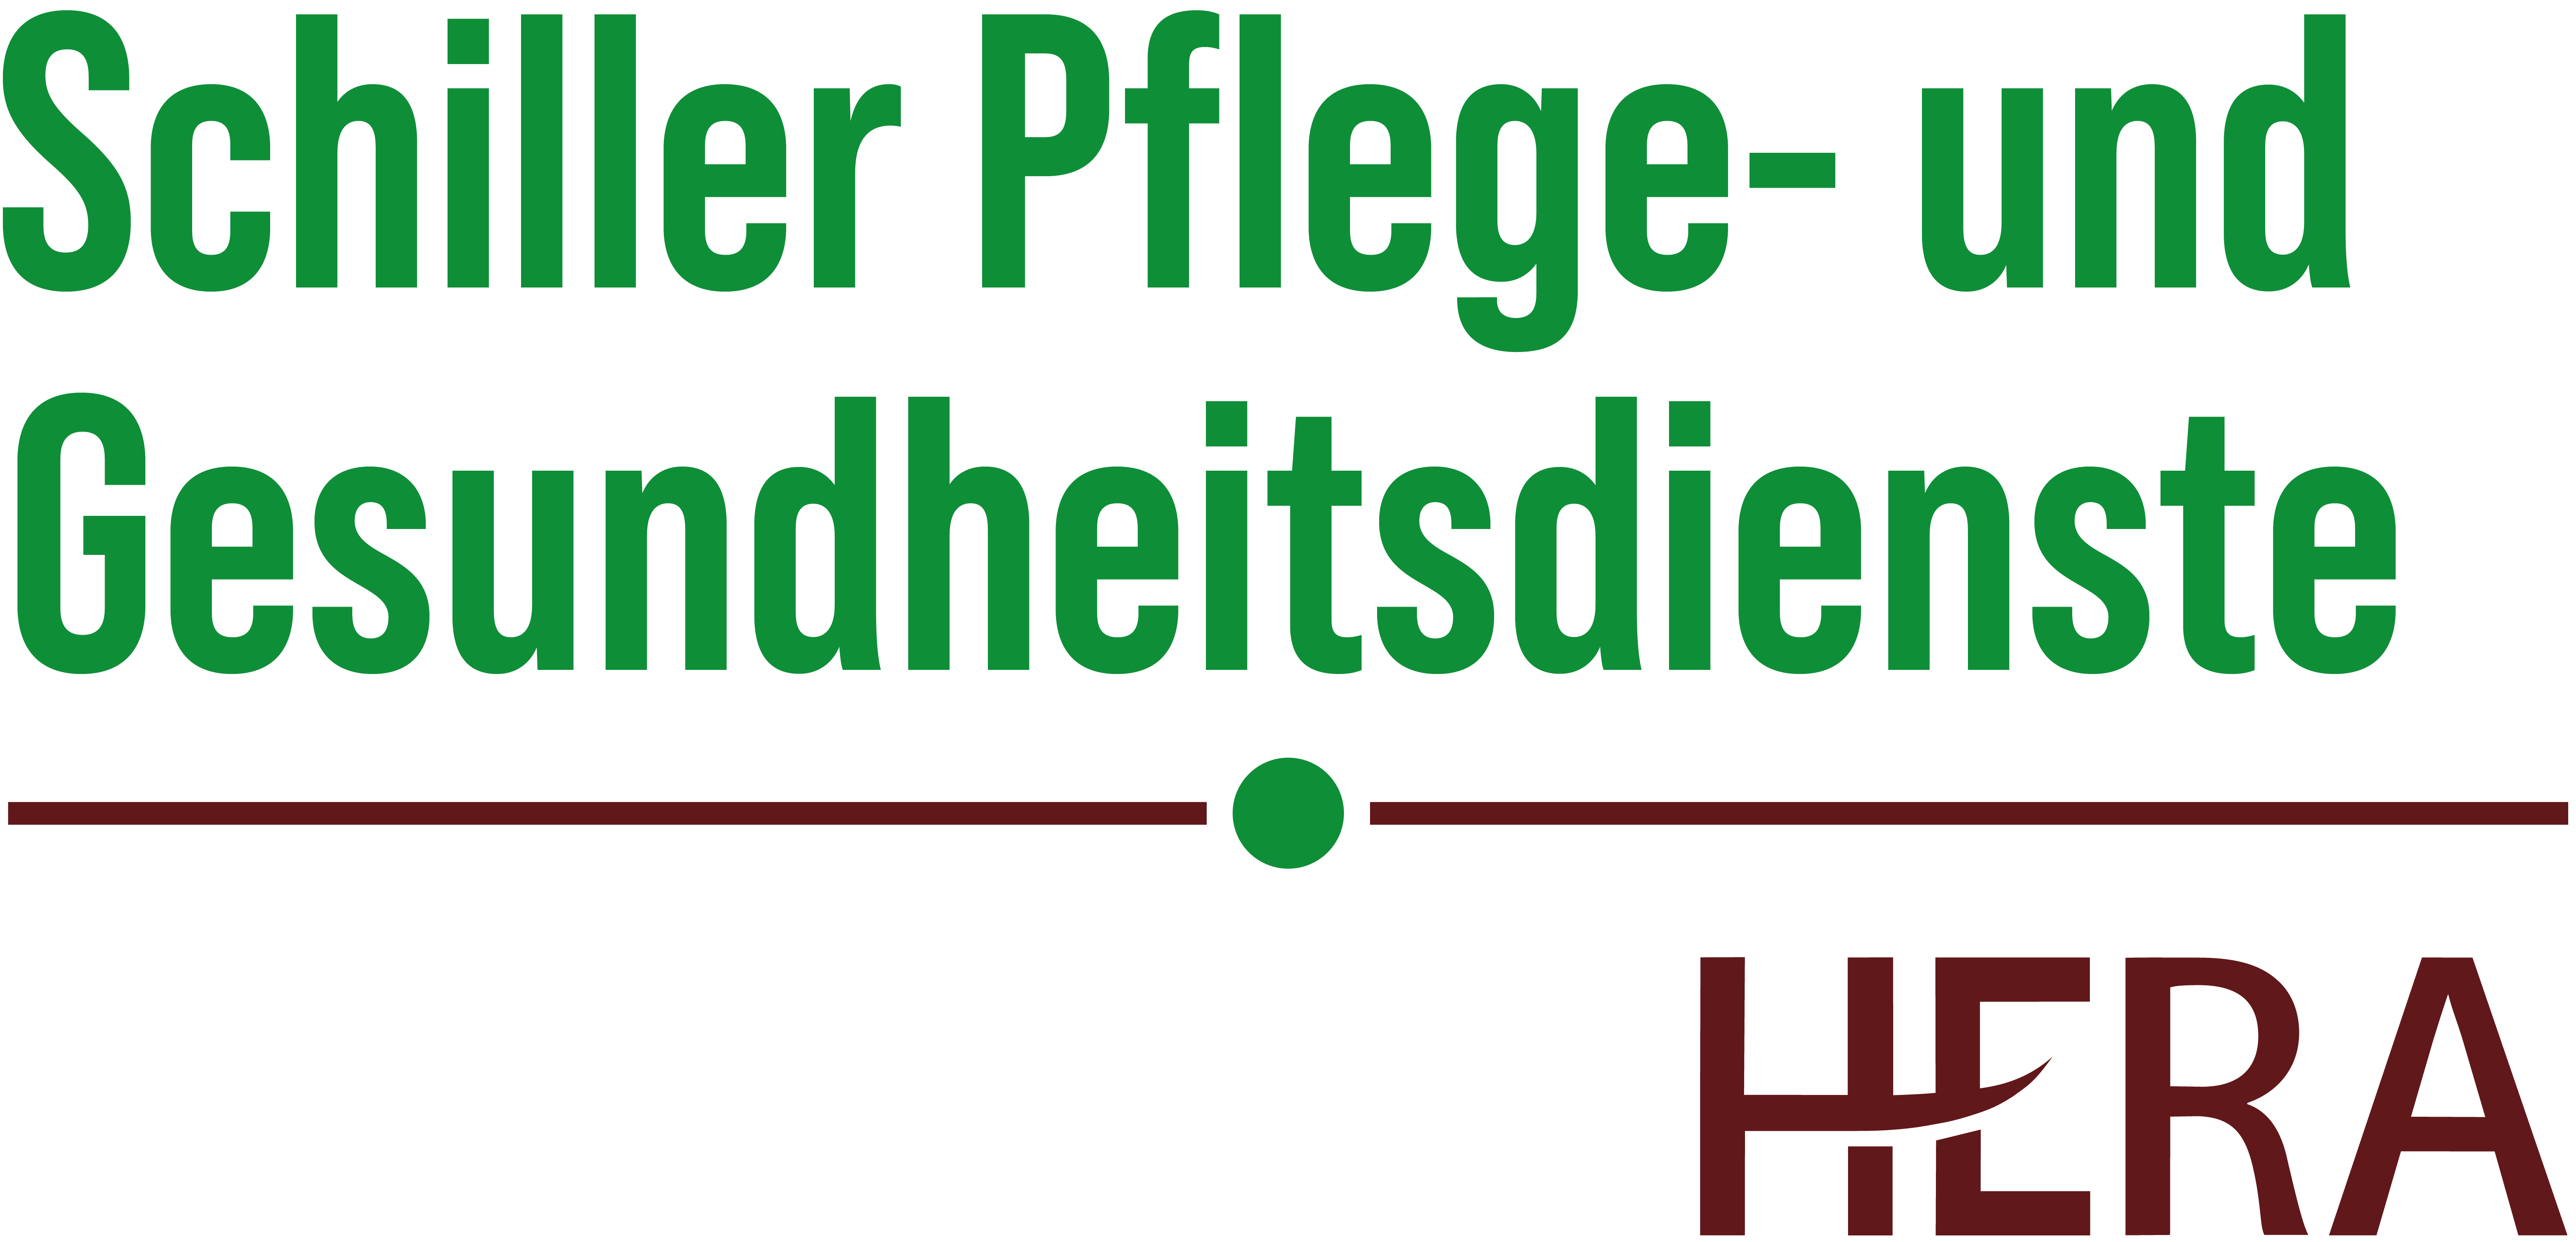 Schiller Pflege- und Gesundheitsdienste – Pflege zu Hause in Berlin Spandau und Betreutes Wohnen in Falkensee